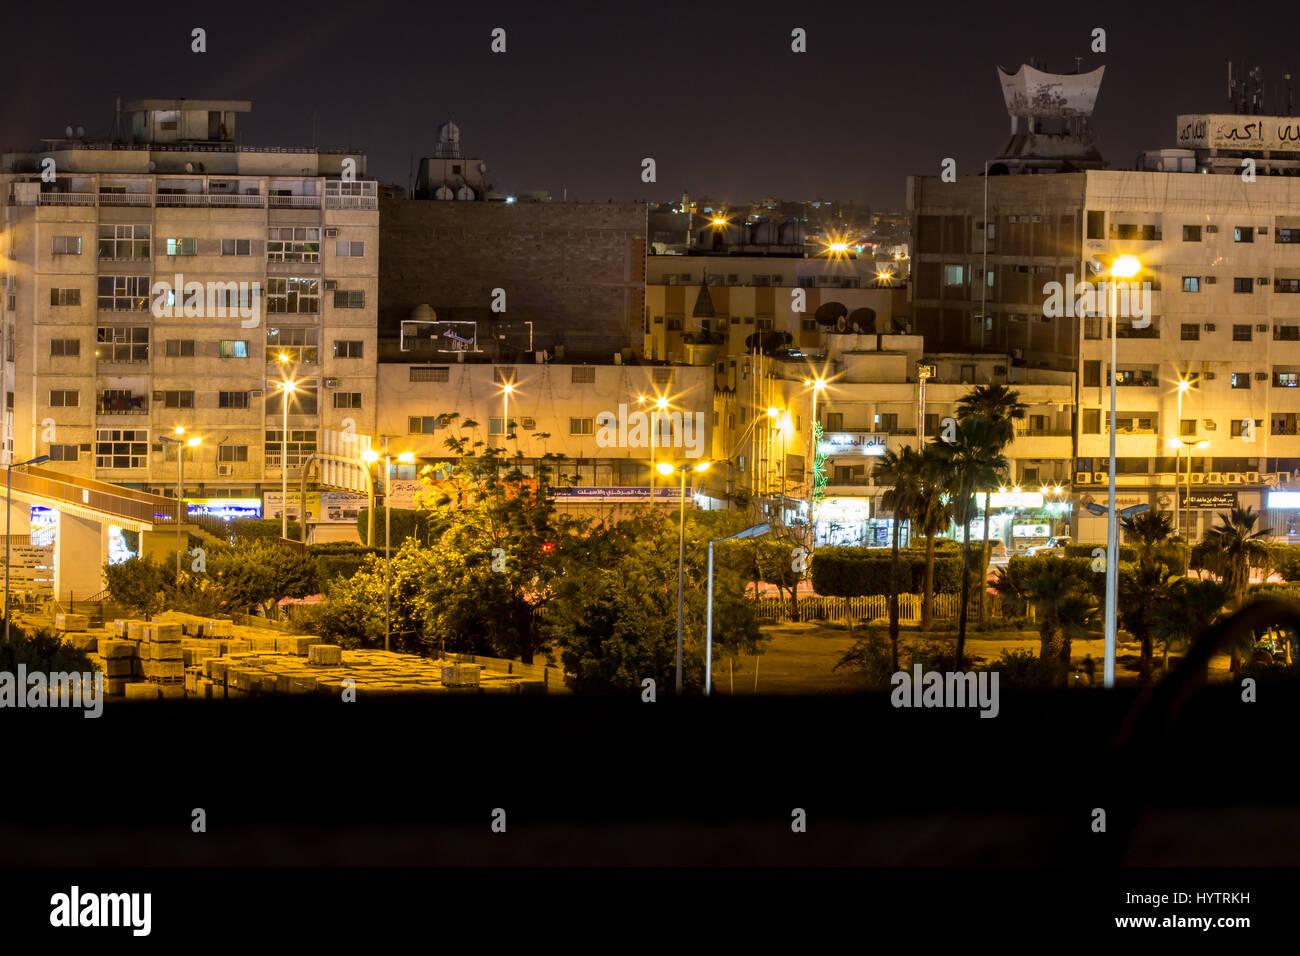 Immagini scattate di notte a notte tranquilla taif arabia saudita calma notti Foto Stock